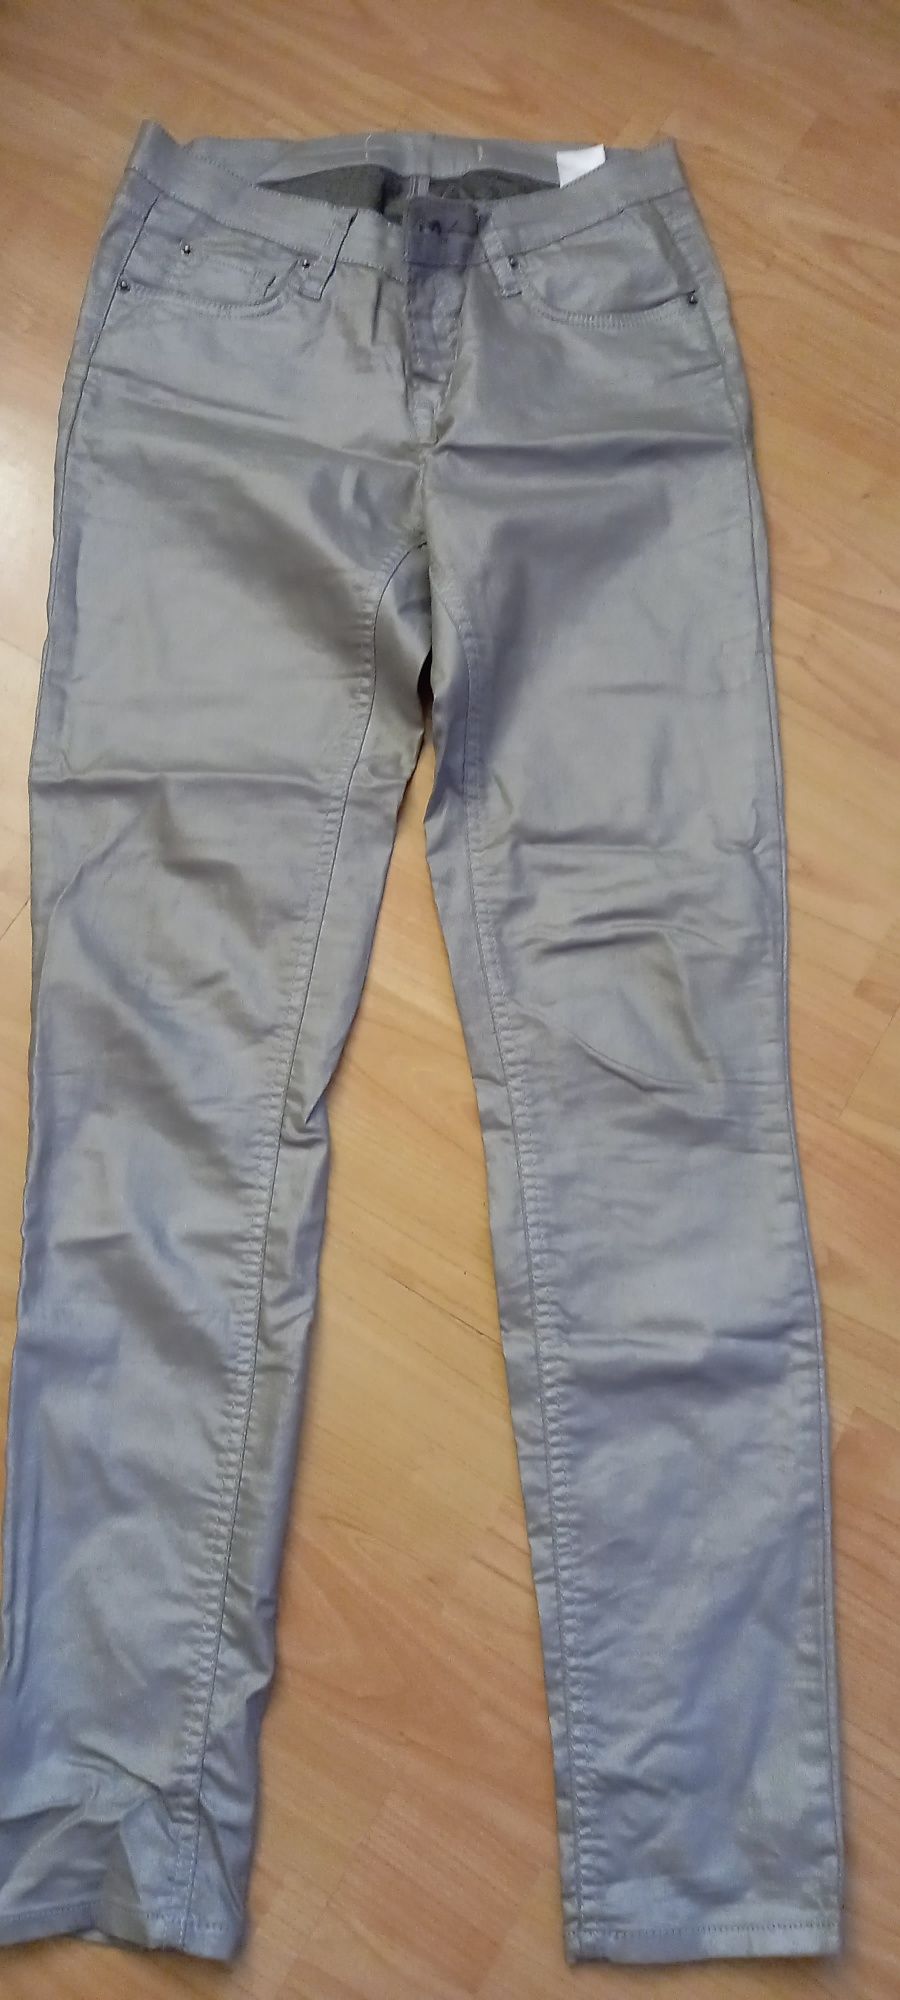 Spodnie srebrne woskowane jeansy, szare r M Cubus